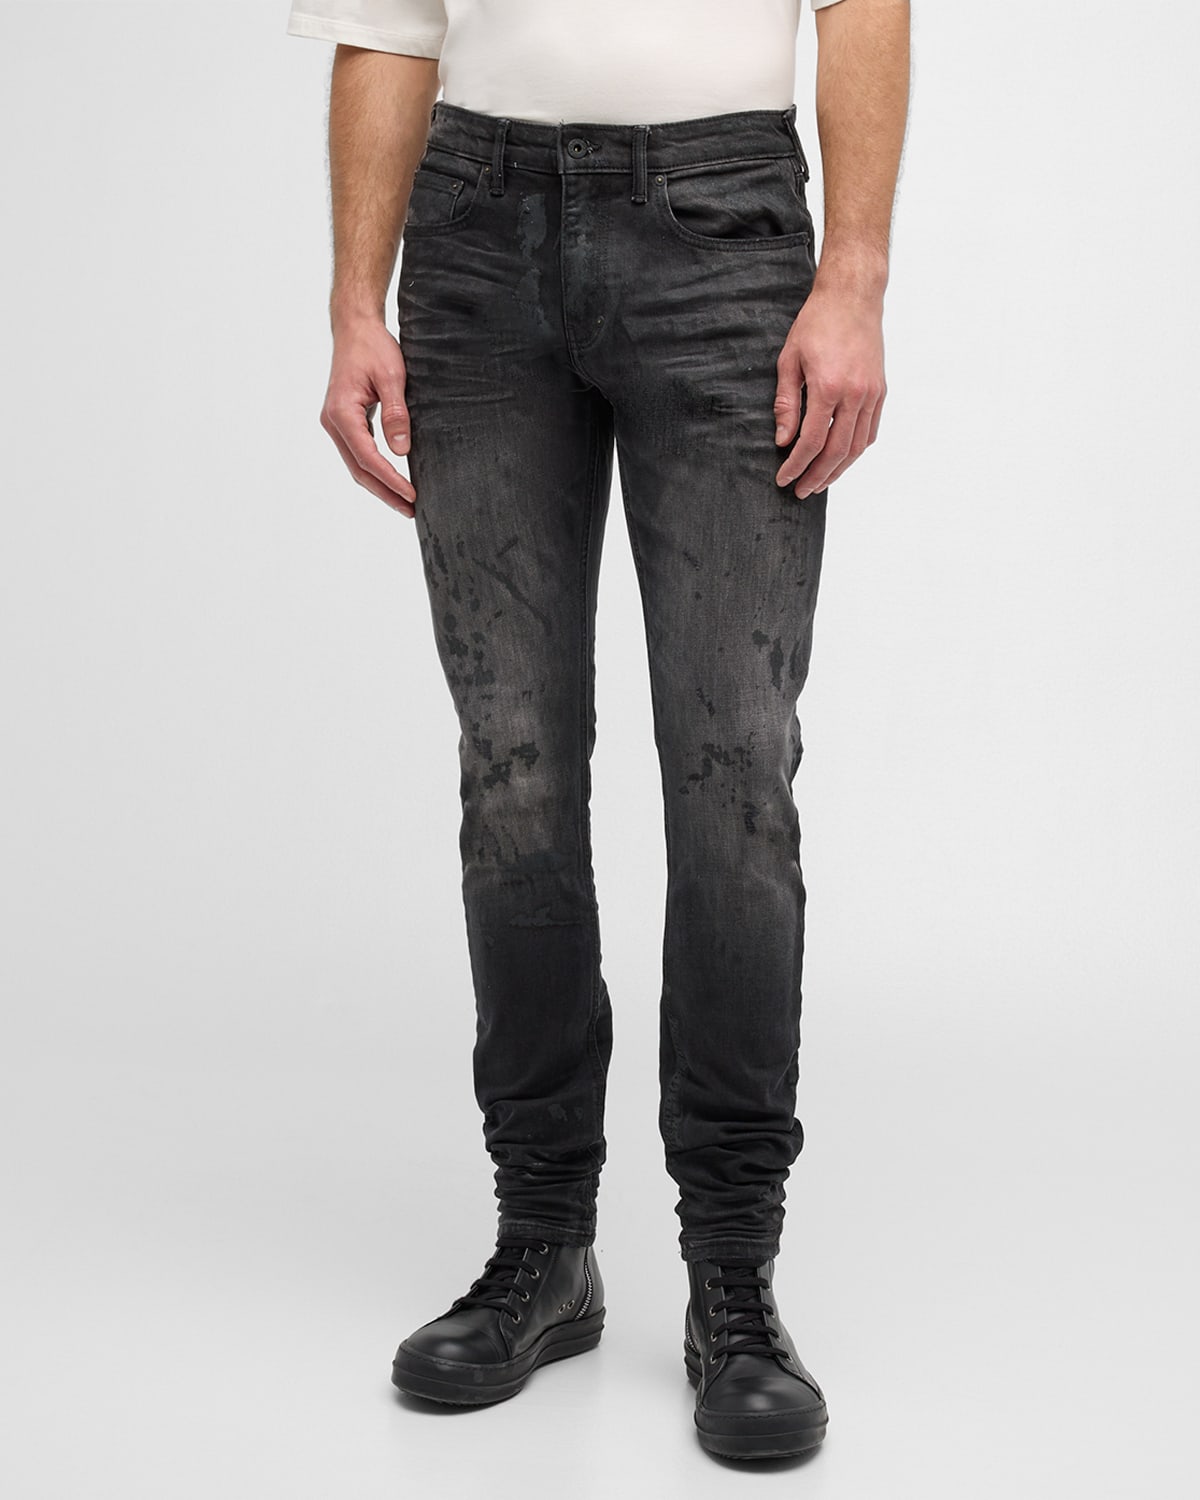 Men's Annex Textured Skinny Jeans